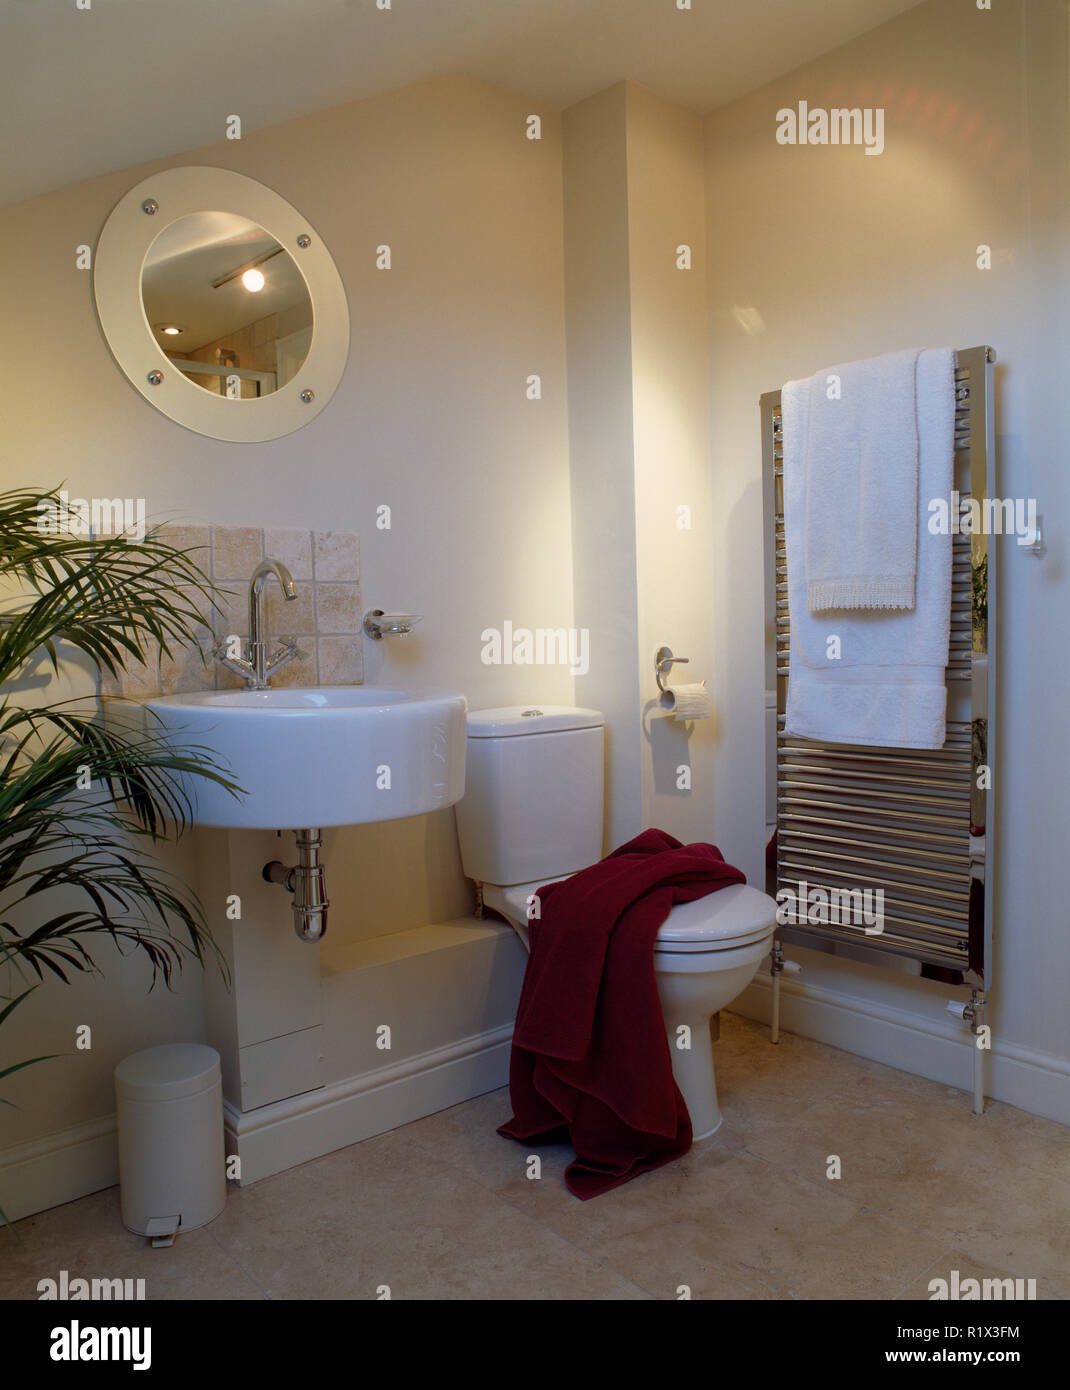 Vasca circolare in una moderna stanza da bagno con portasciugamani riscaldato Foto Stock